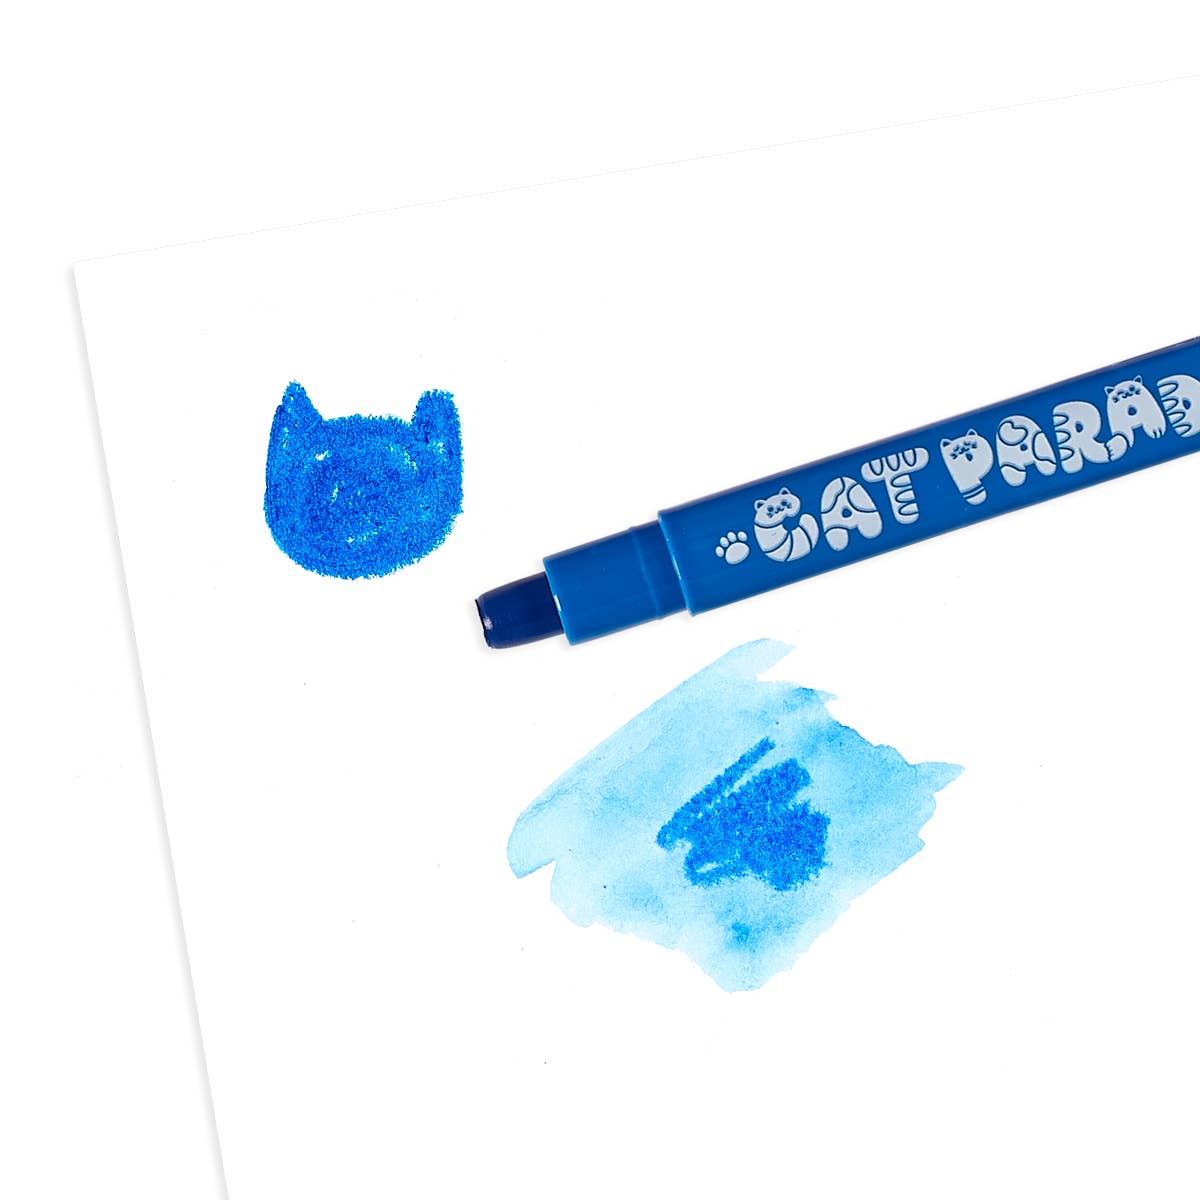 OOLY - Cat Parade Gel Crayons - Set of 12